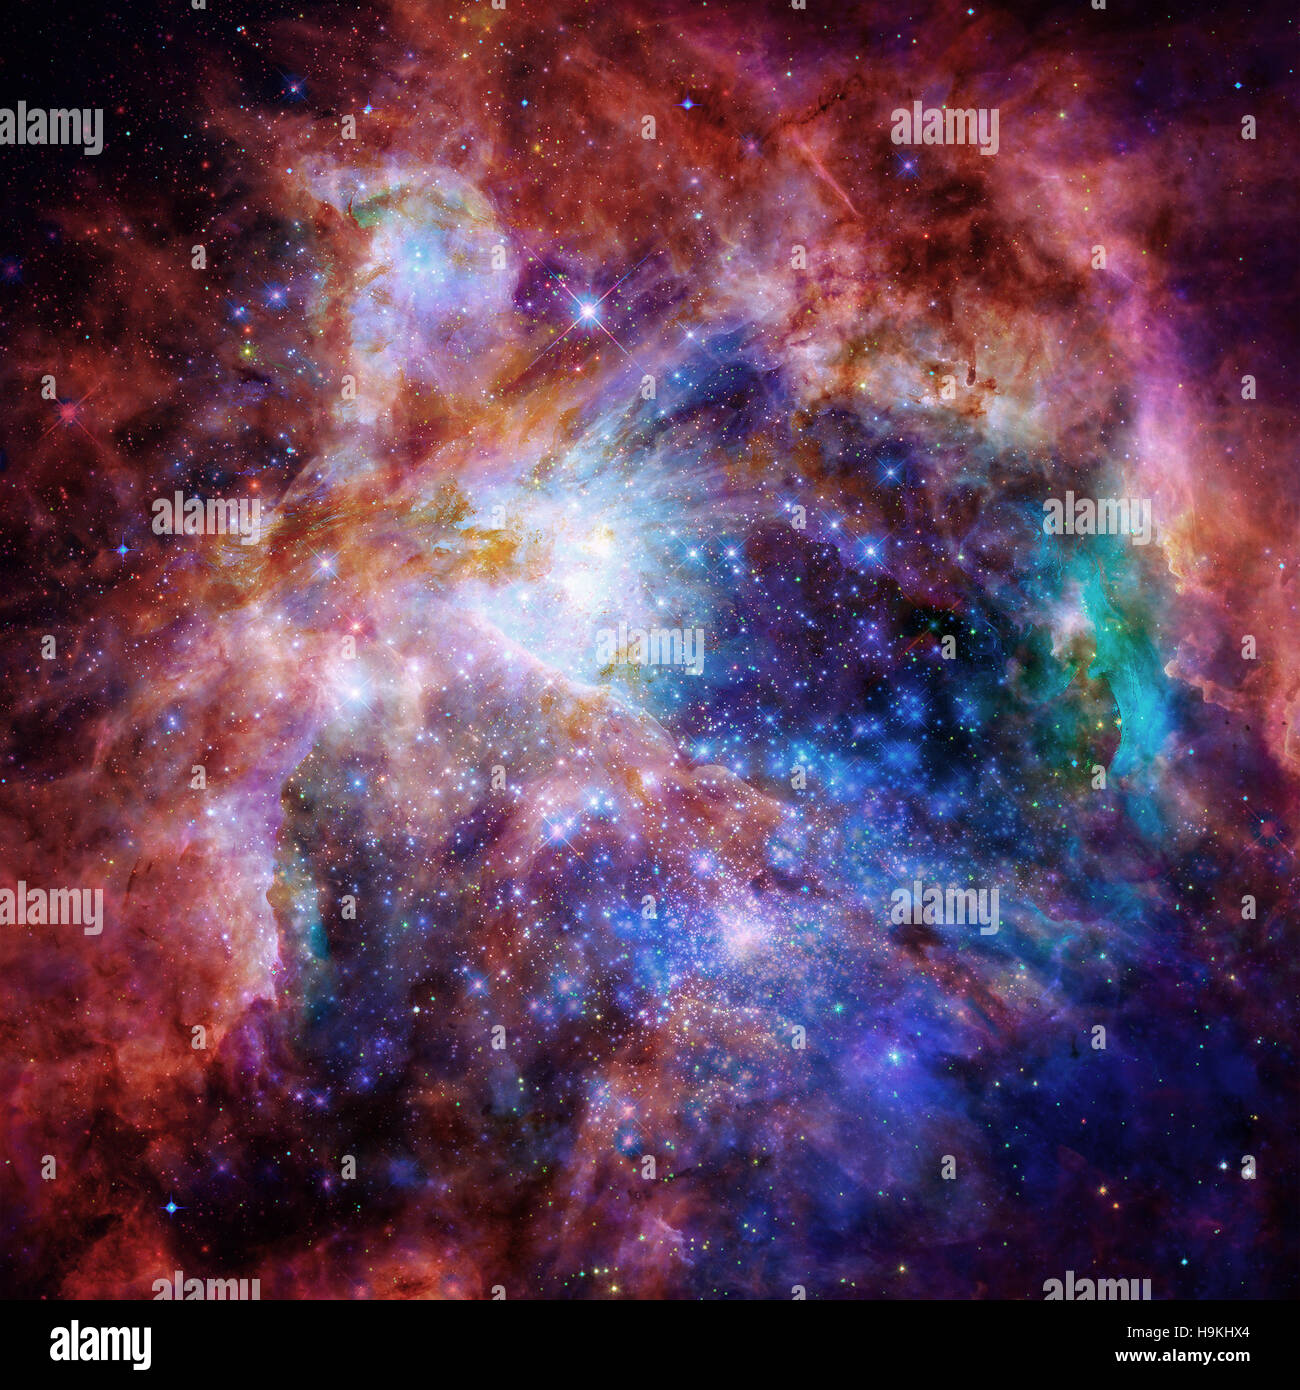 Universe filled with nebula, stars and galaxy. Stock Photo